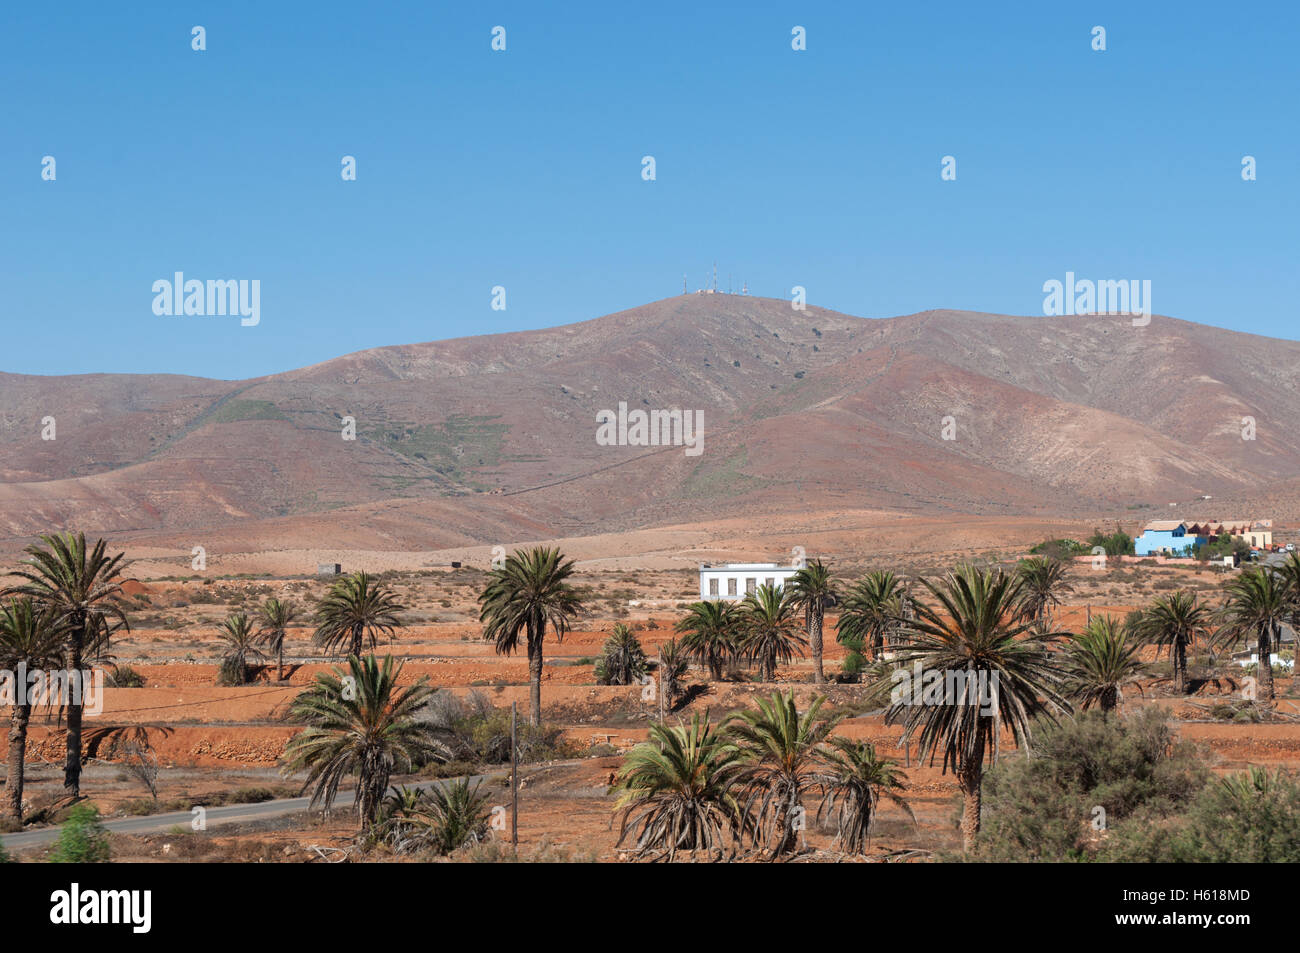 Fuerteventura, Îles Canaries, l'Afrique du Nord : voir le paysage désertique avec des palmiers, des maisons blanches et une terre à la recherche comme la planète de Mars Banque D'Images